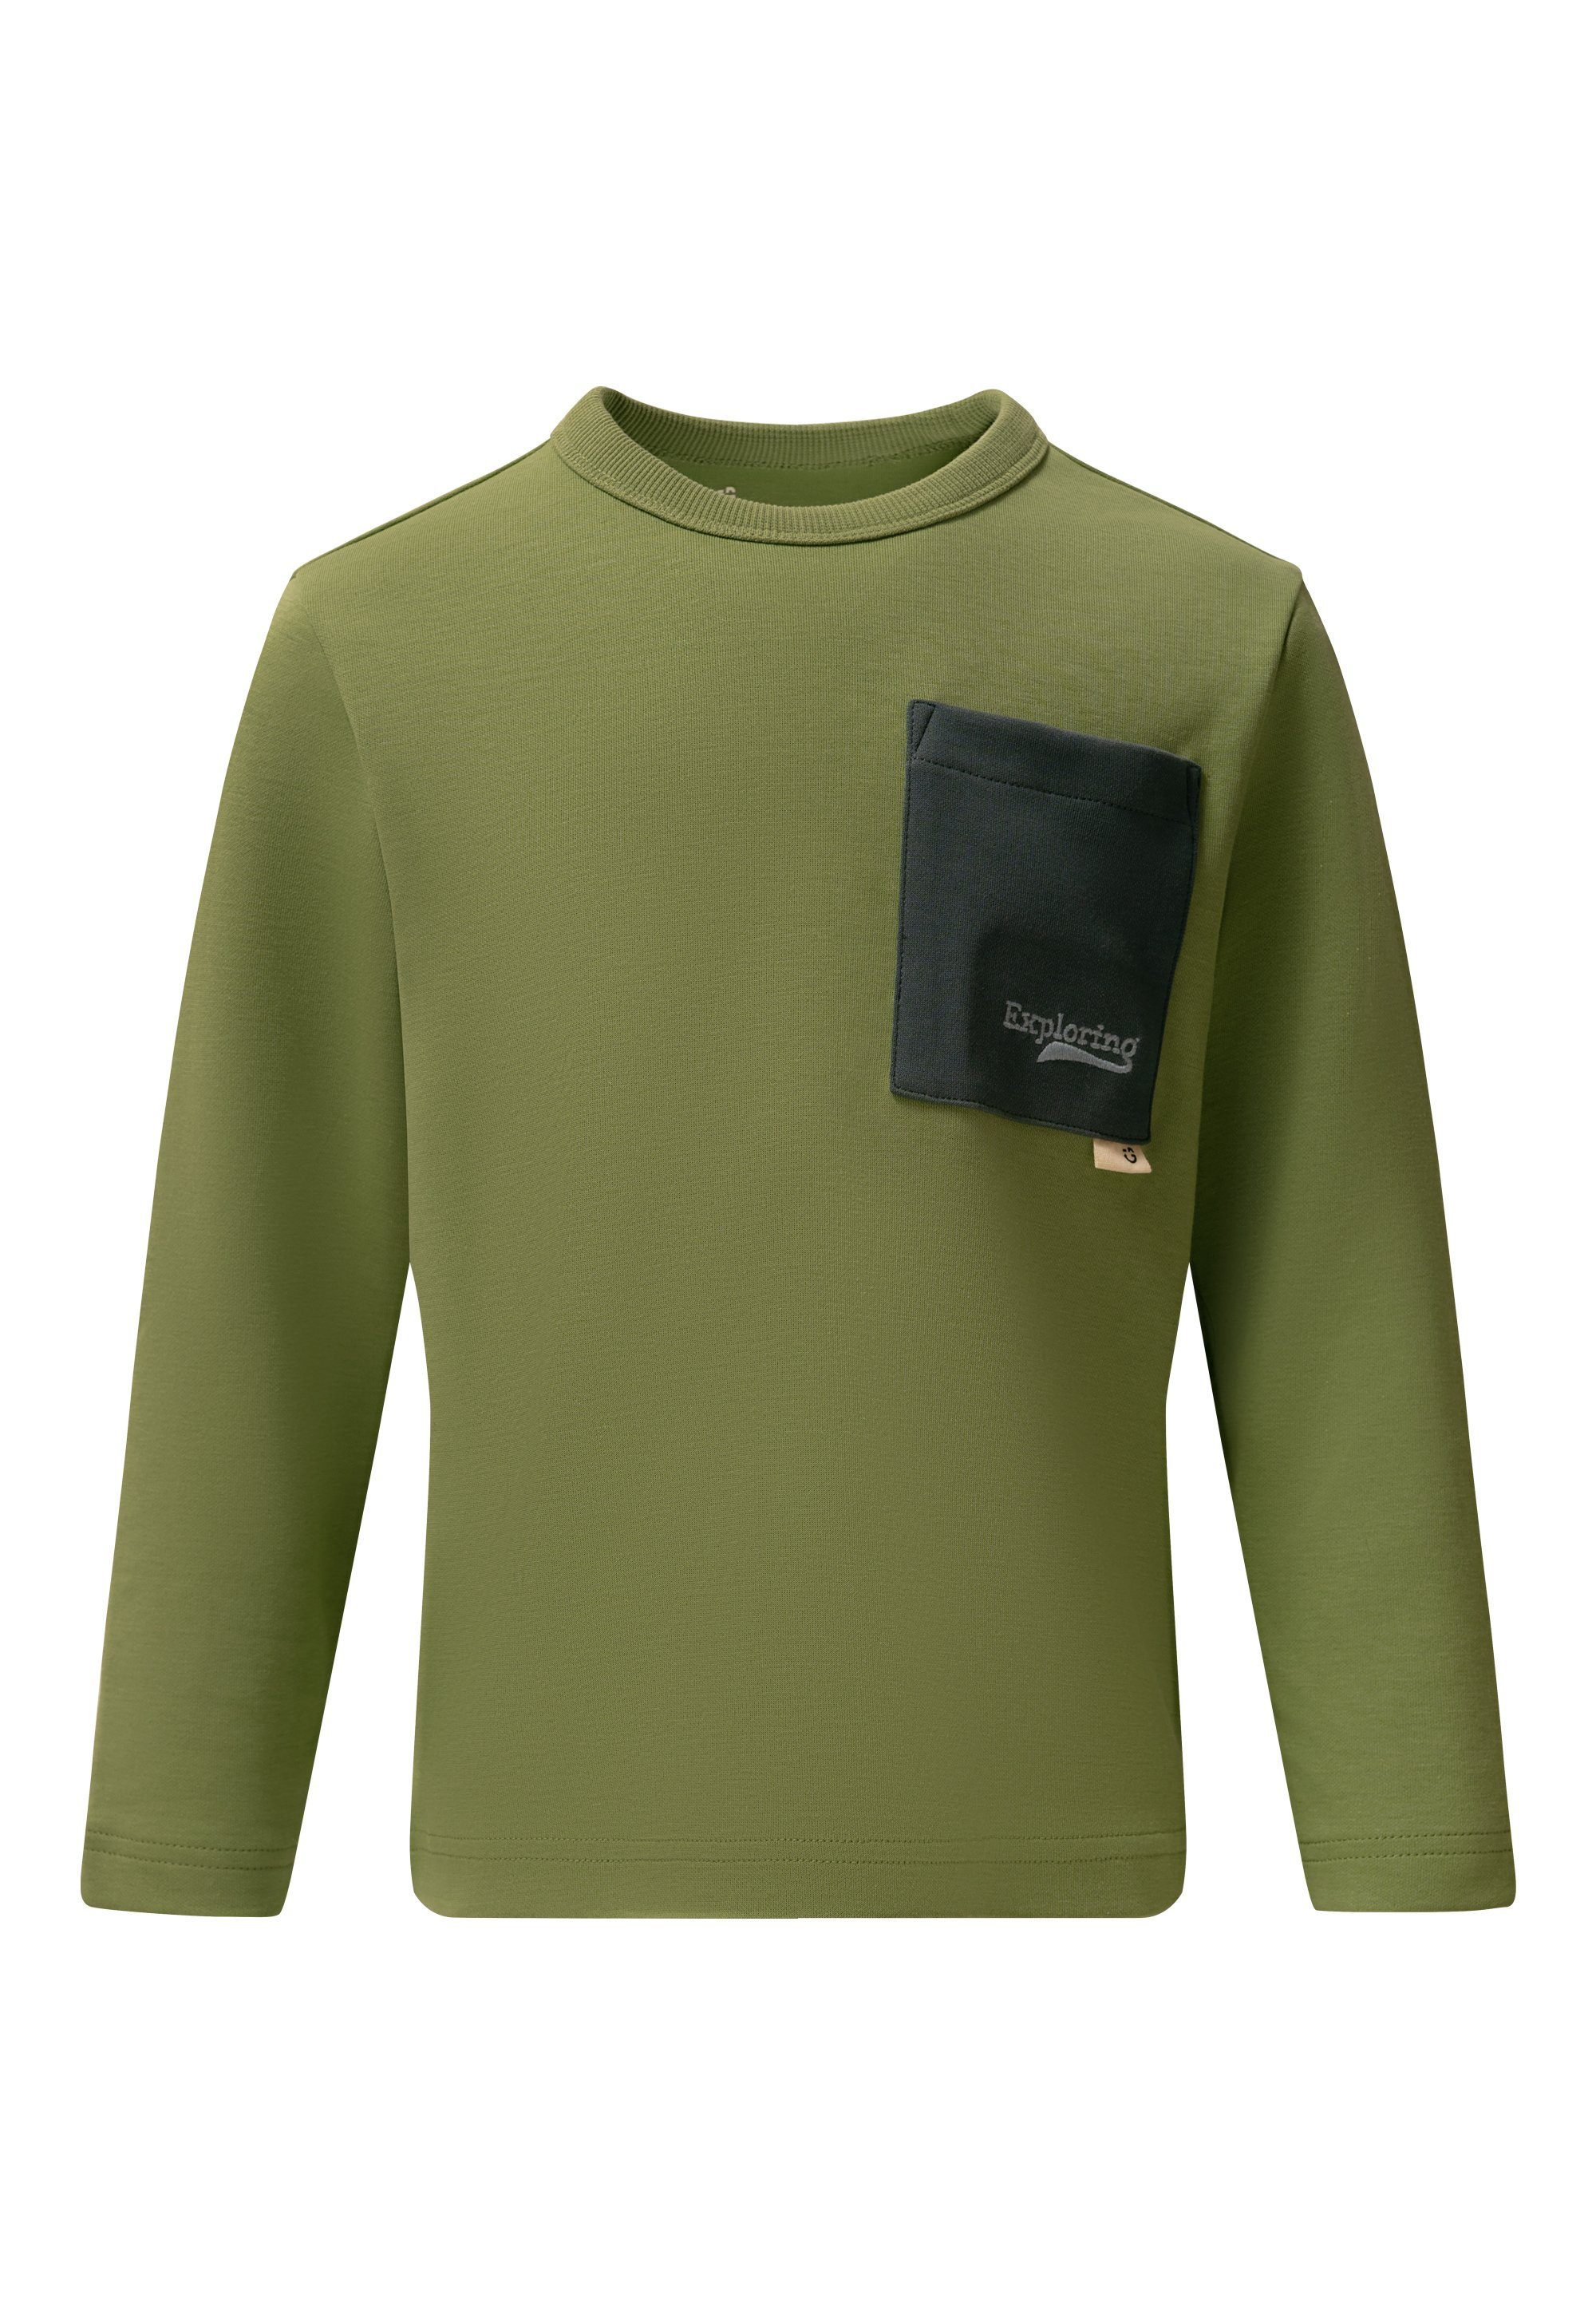 grün stylischer GIORDANO Langarmshirt junior mit Kontrast-Tasche